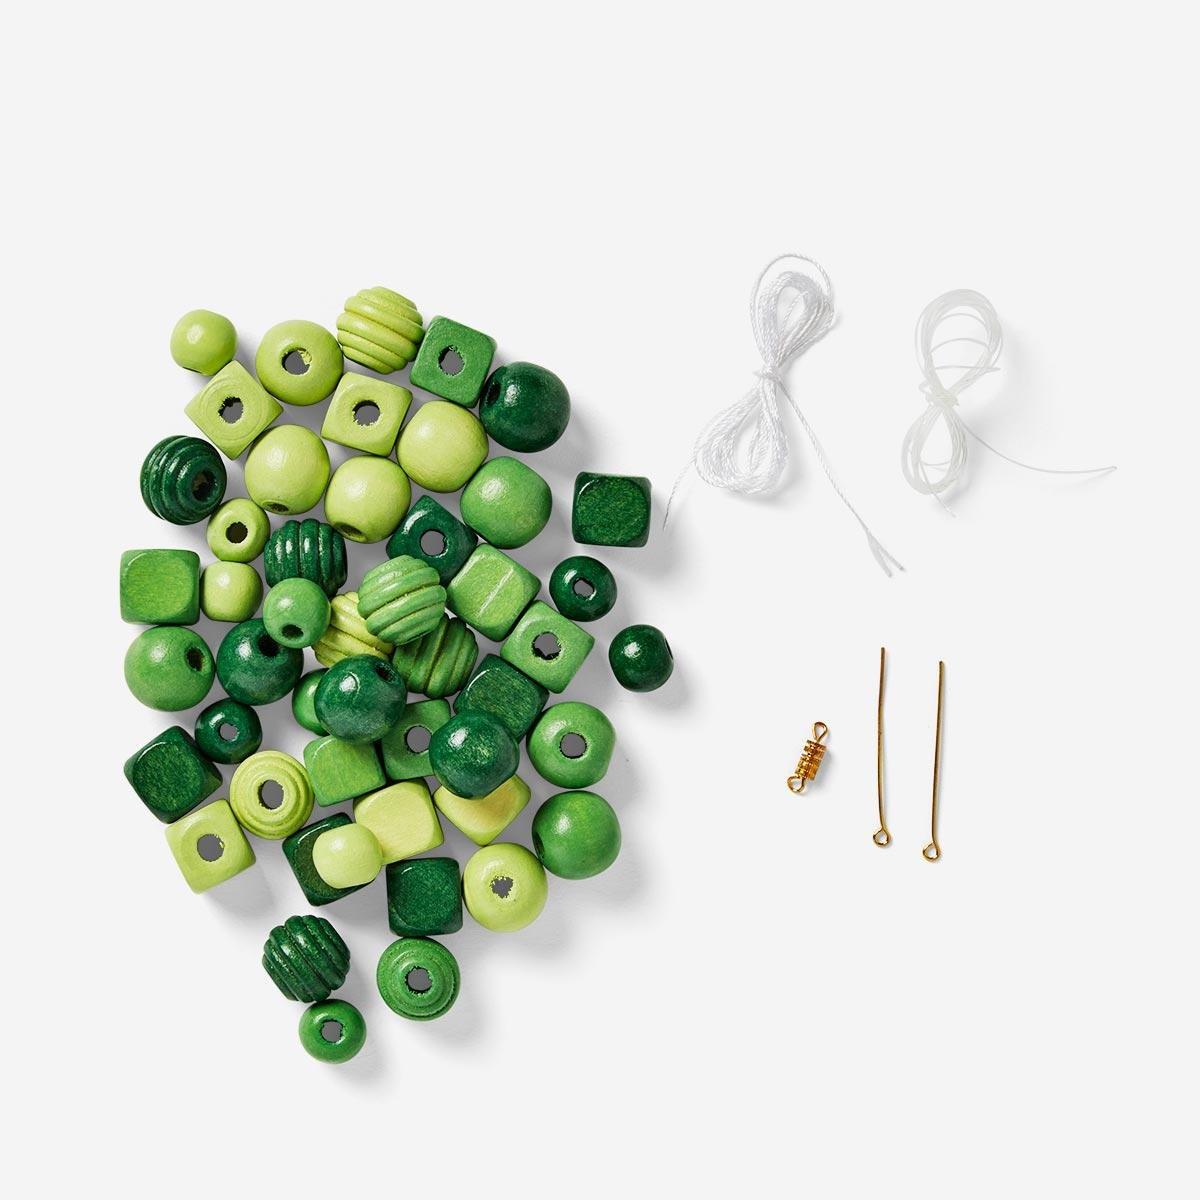 Green wooden beads